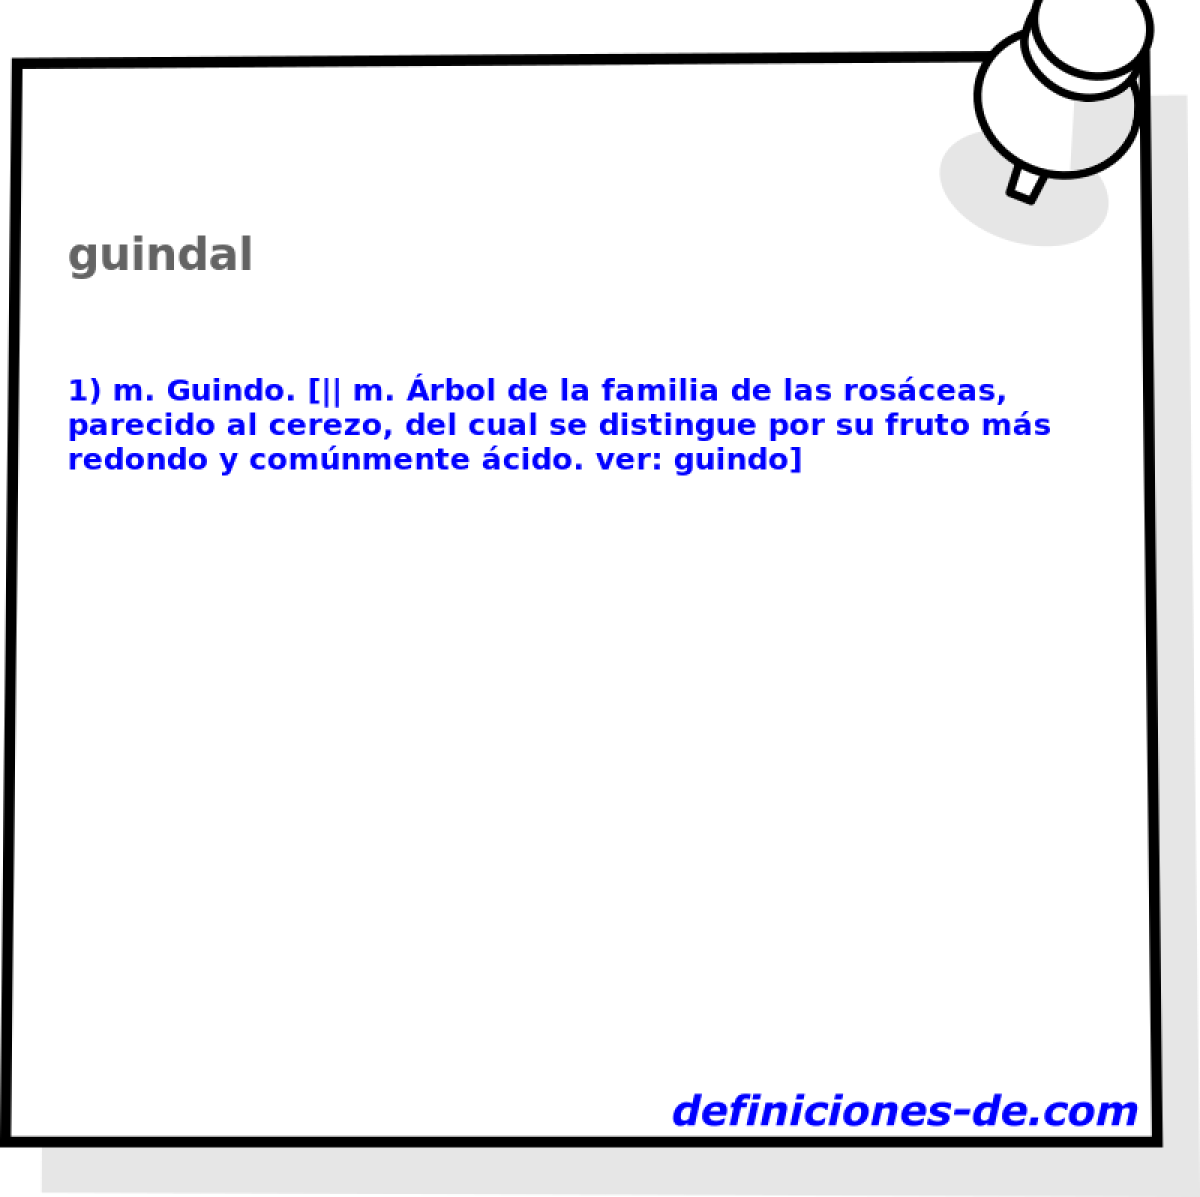 guindal 